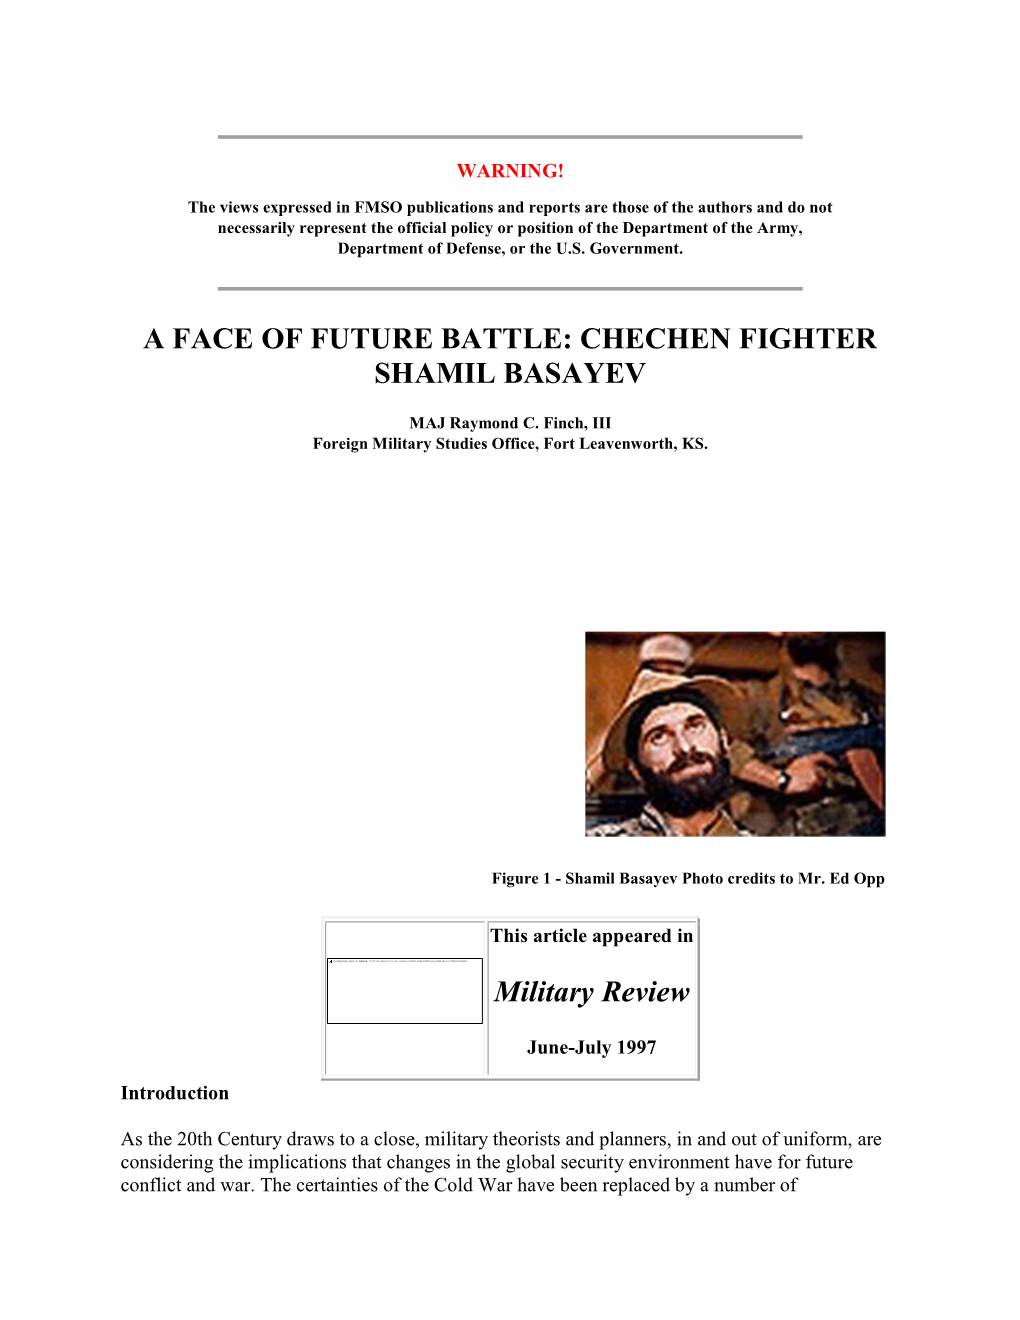 Chechen Fighter Shamil Basayev